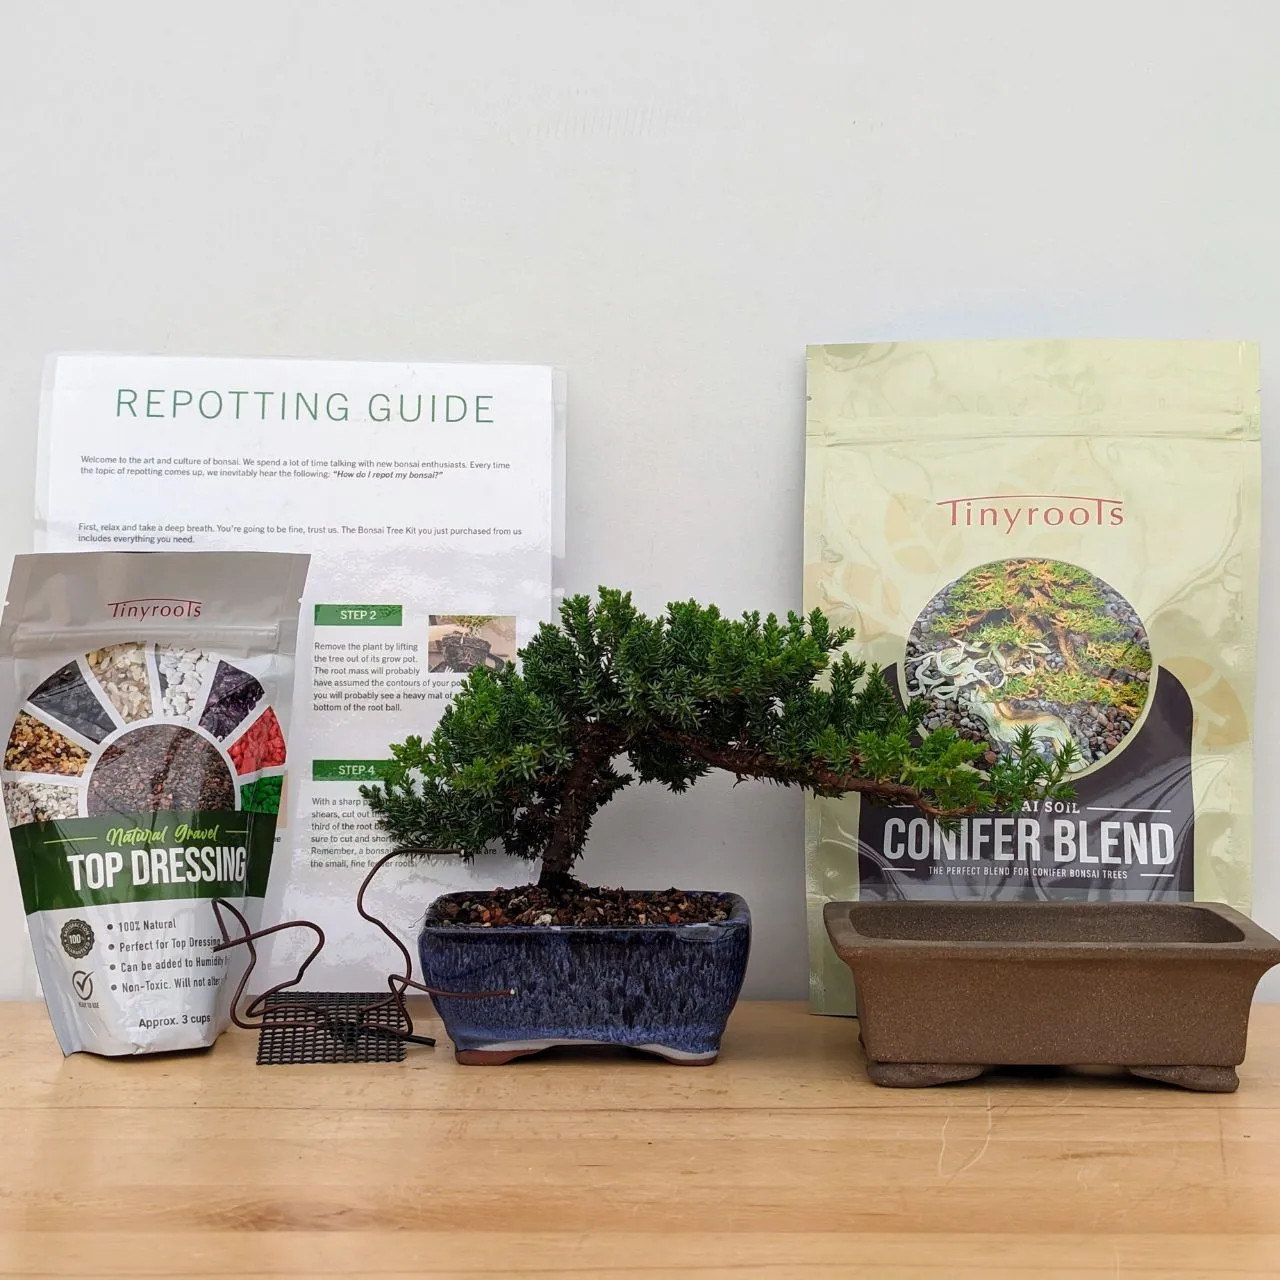 Buy Bonsai Starter Kit - DIY Bonsai Gardening Gift - Garden